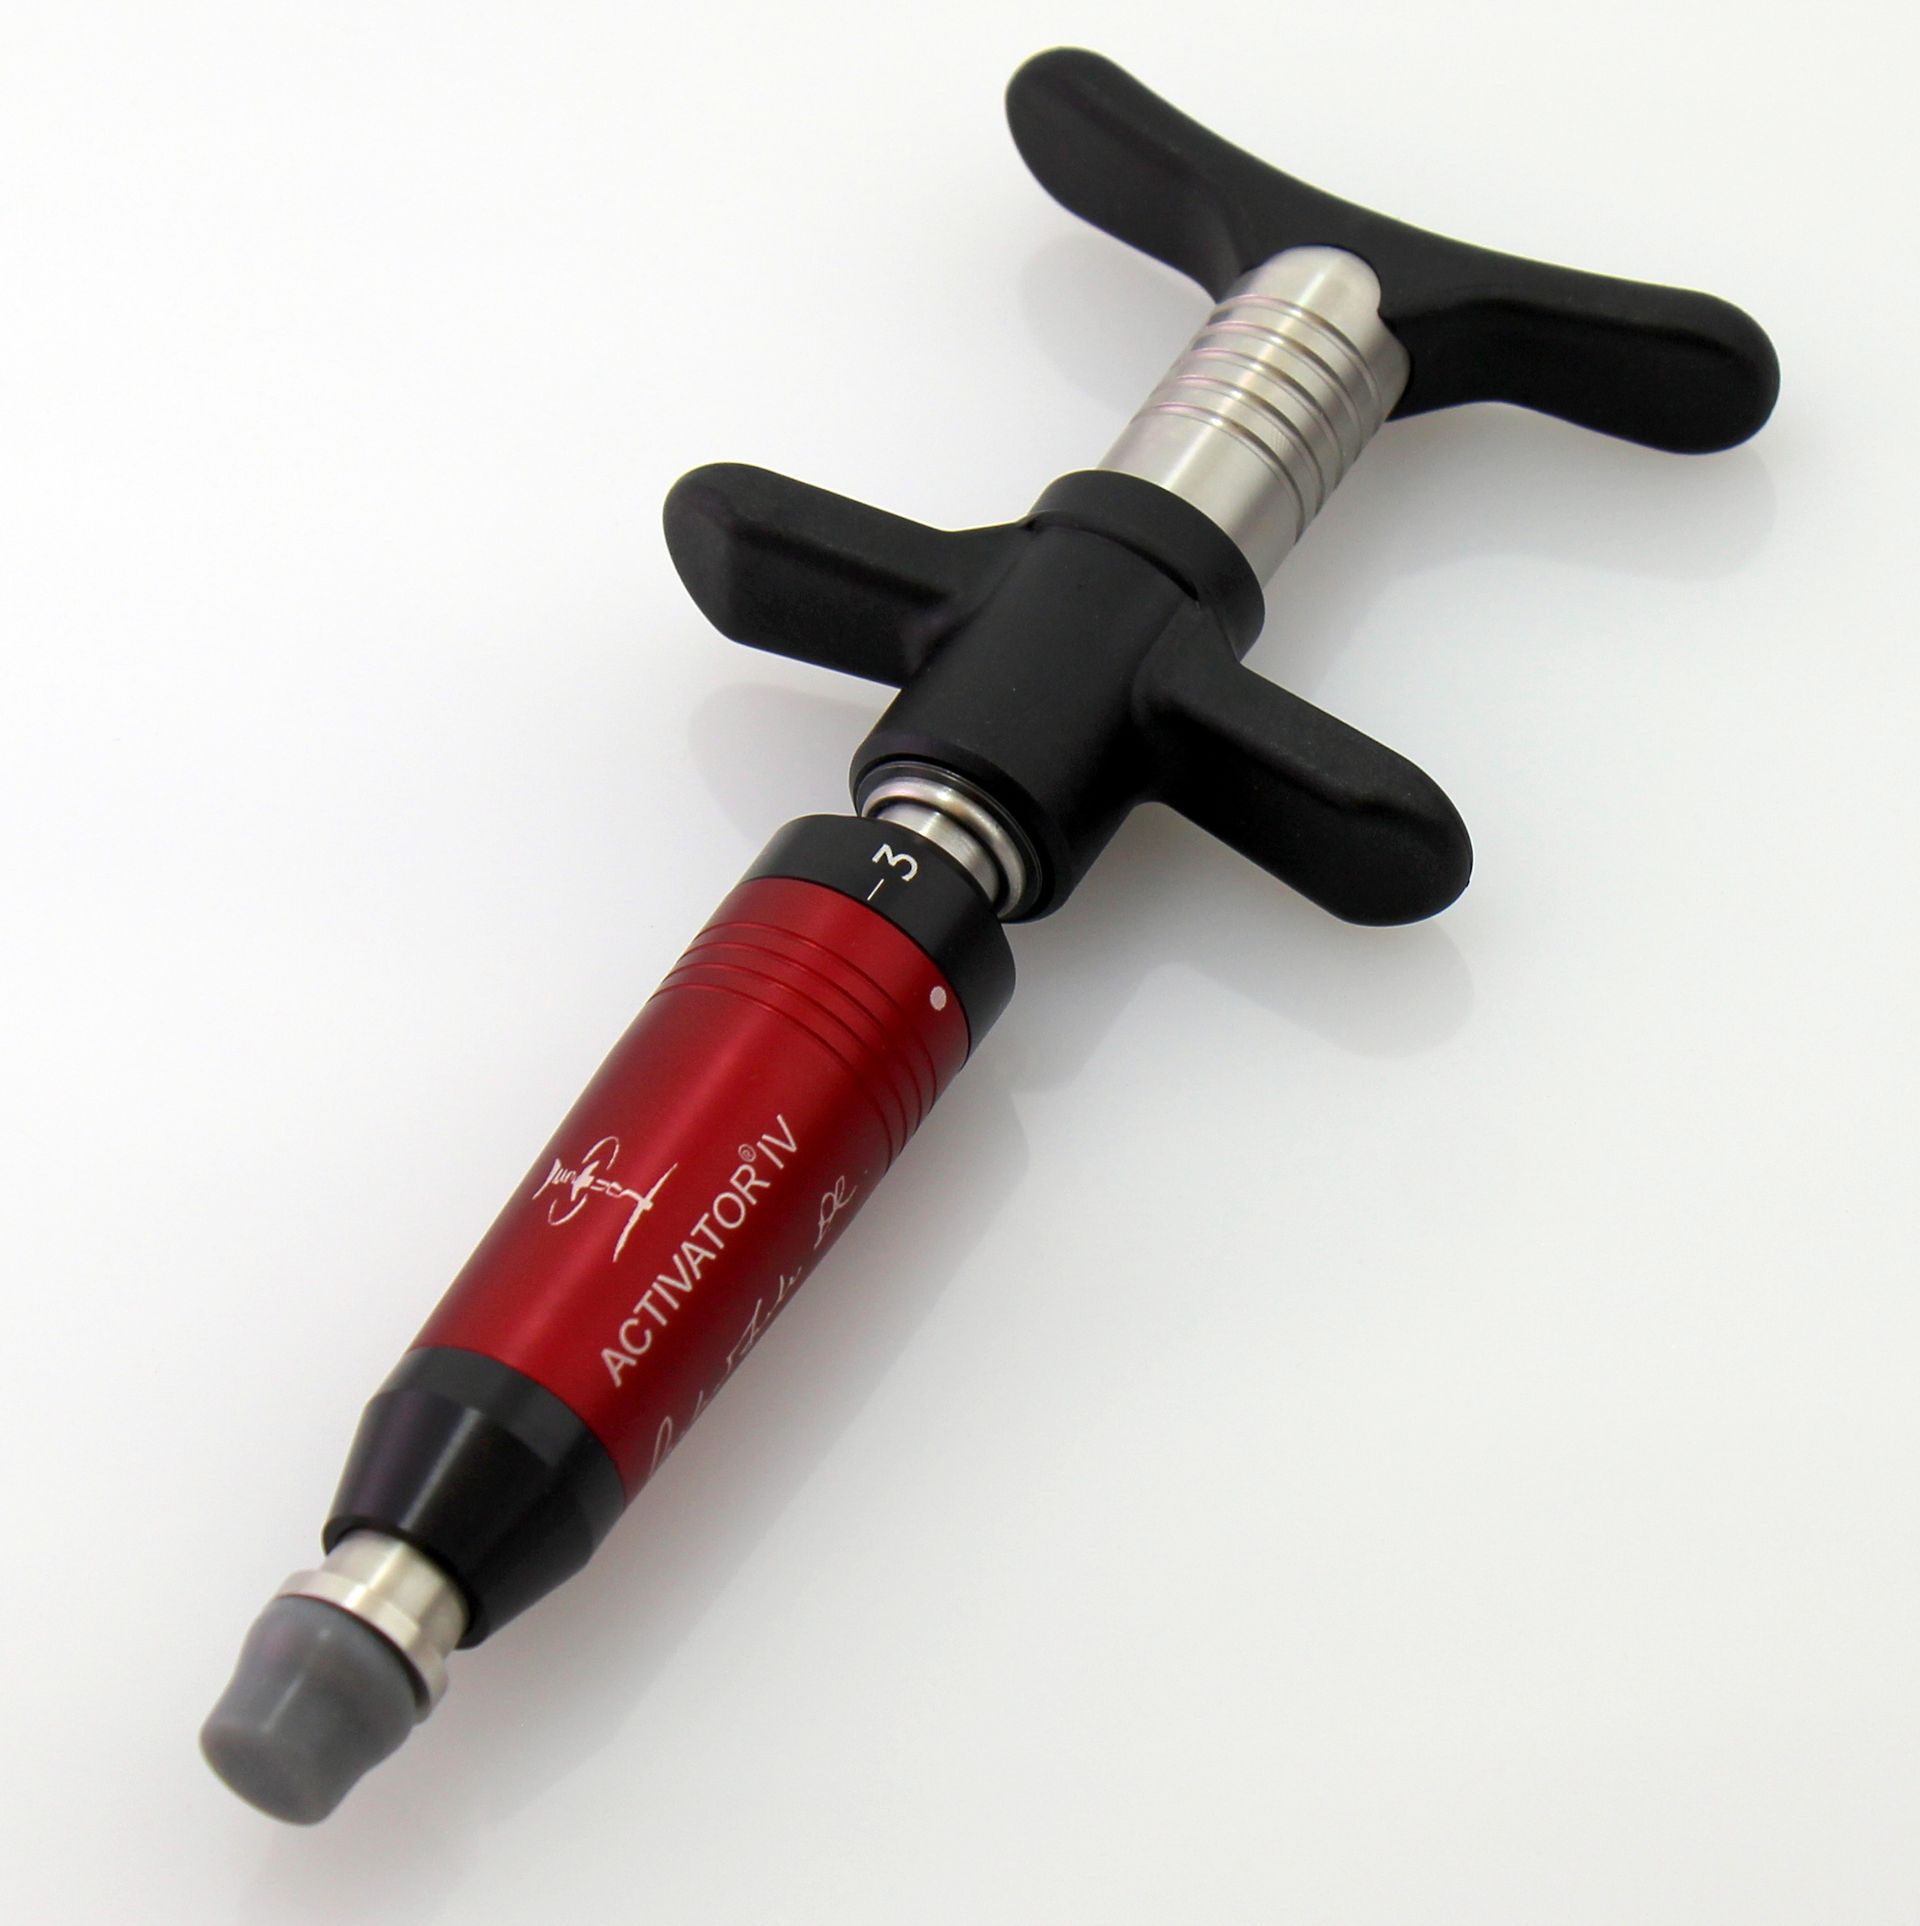 The Activator Instrument used in no-crack, gentle Chiropractic adjustments